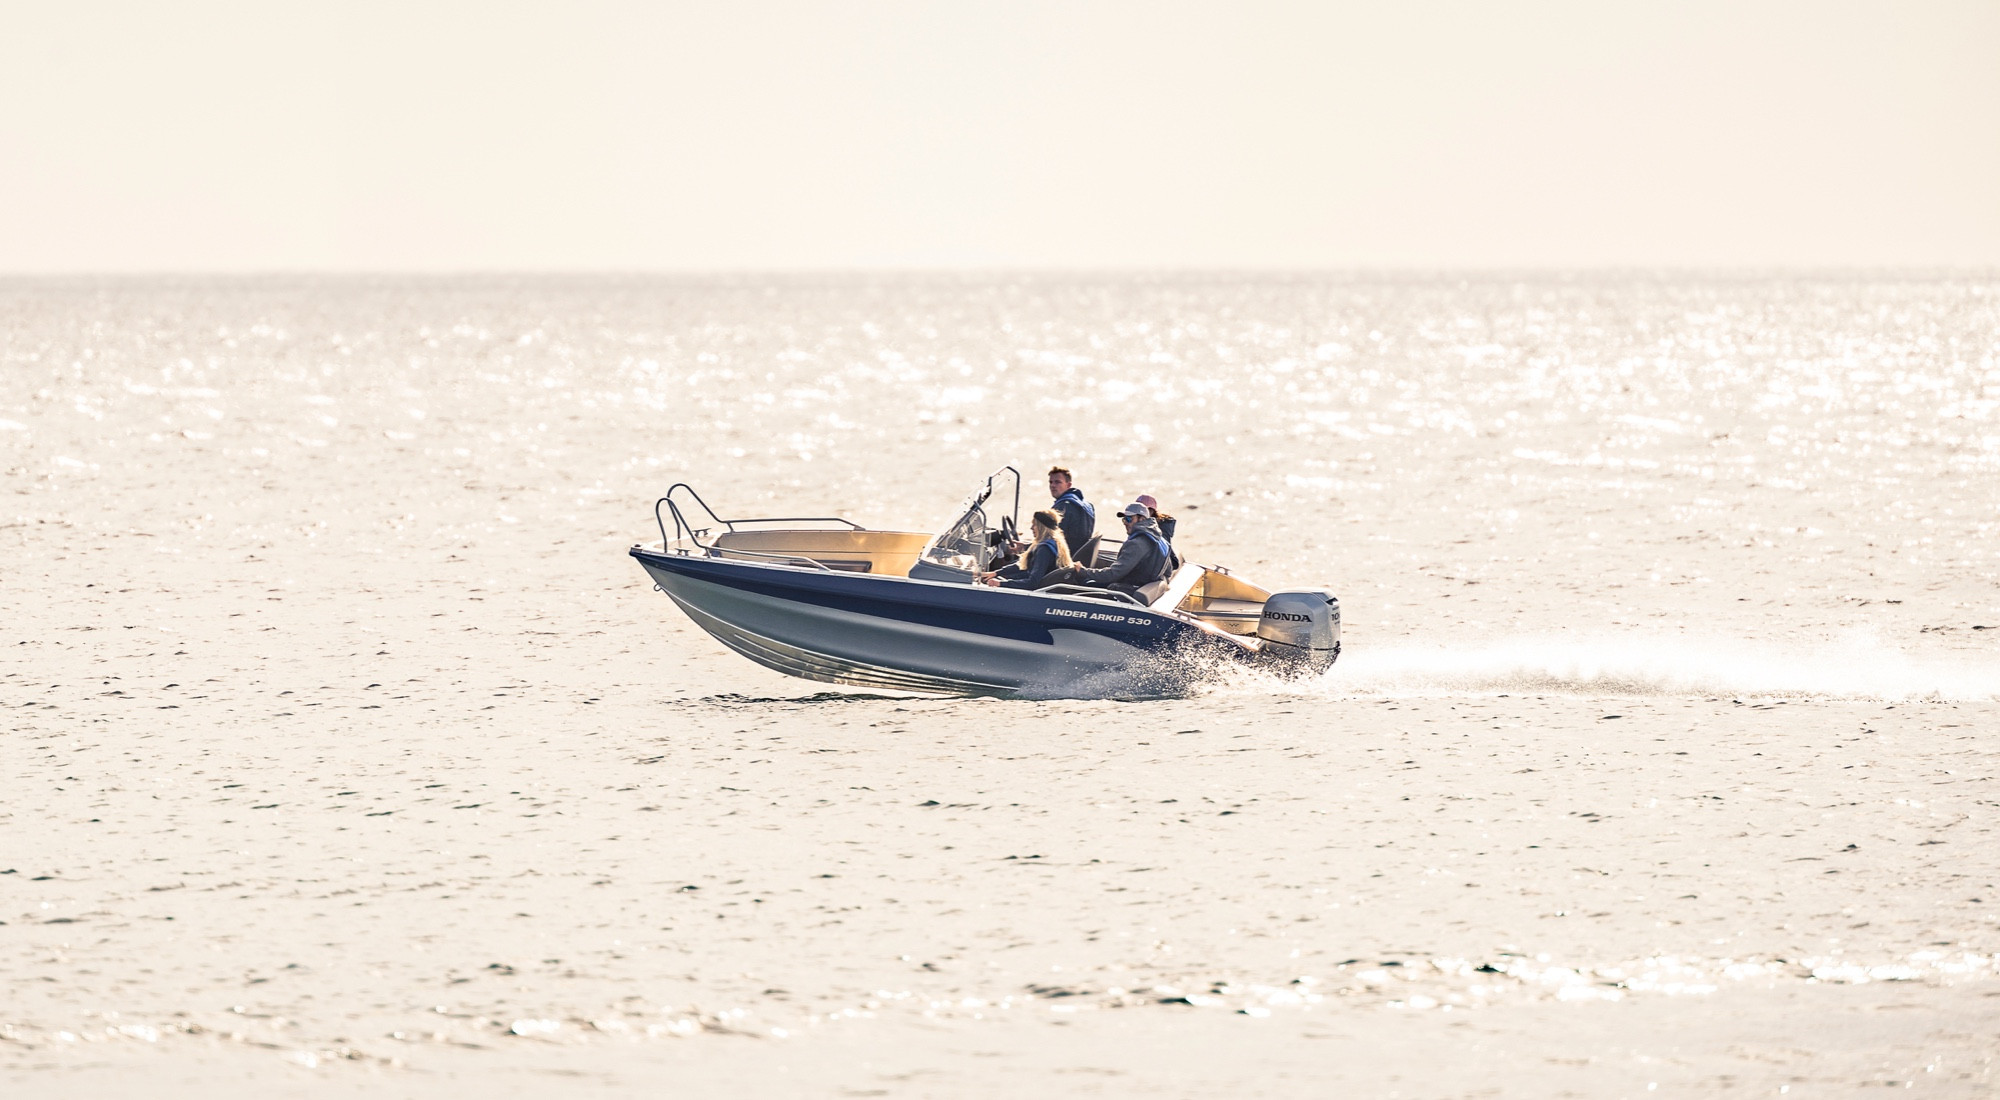 Några unga personer kör Linderbåten Arkip 530 på ett glittrande vatten i solljus.